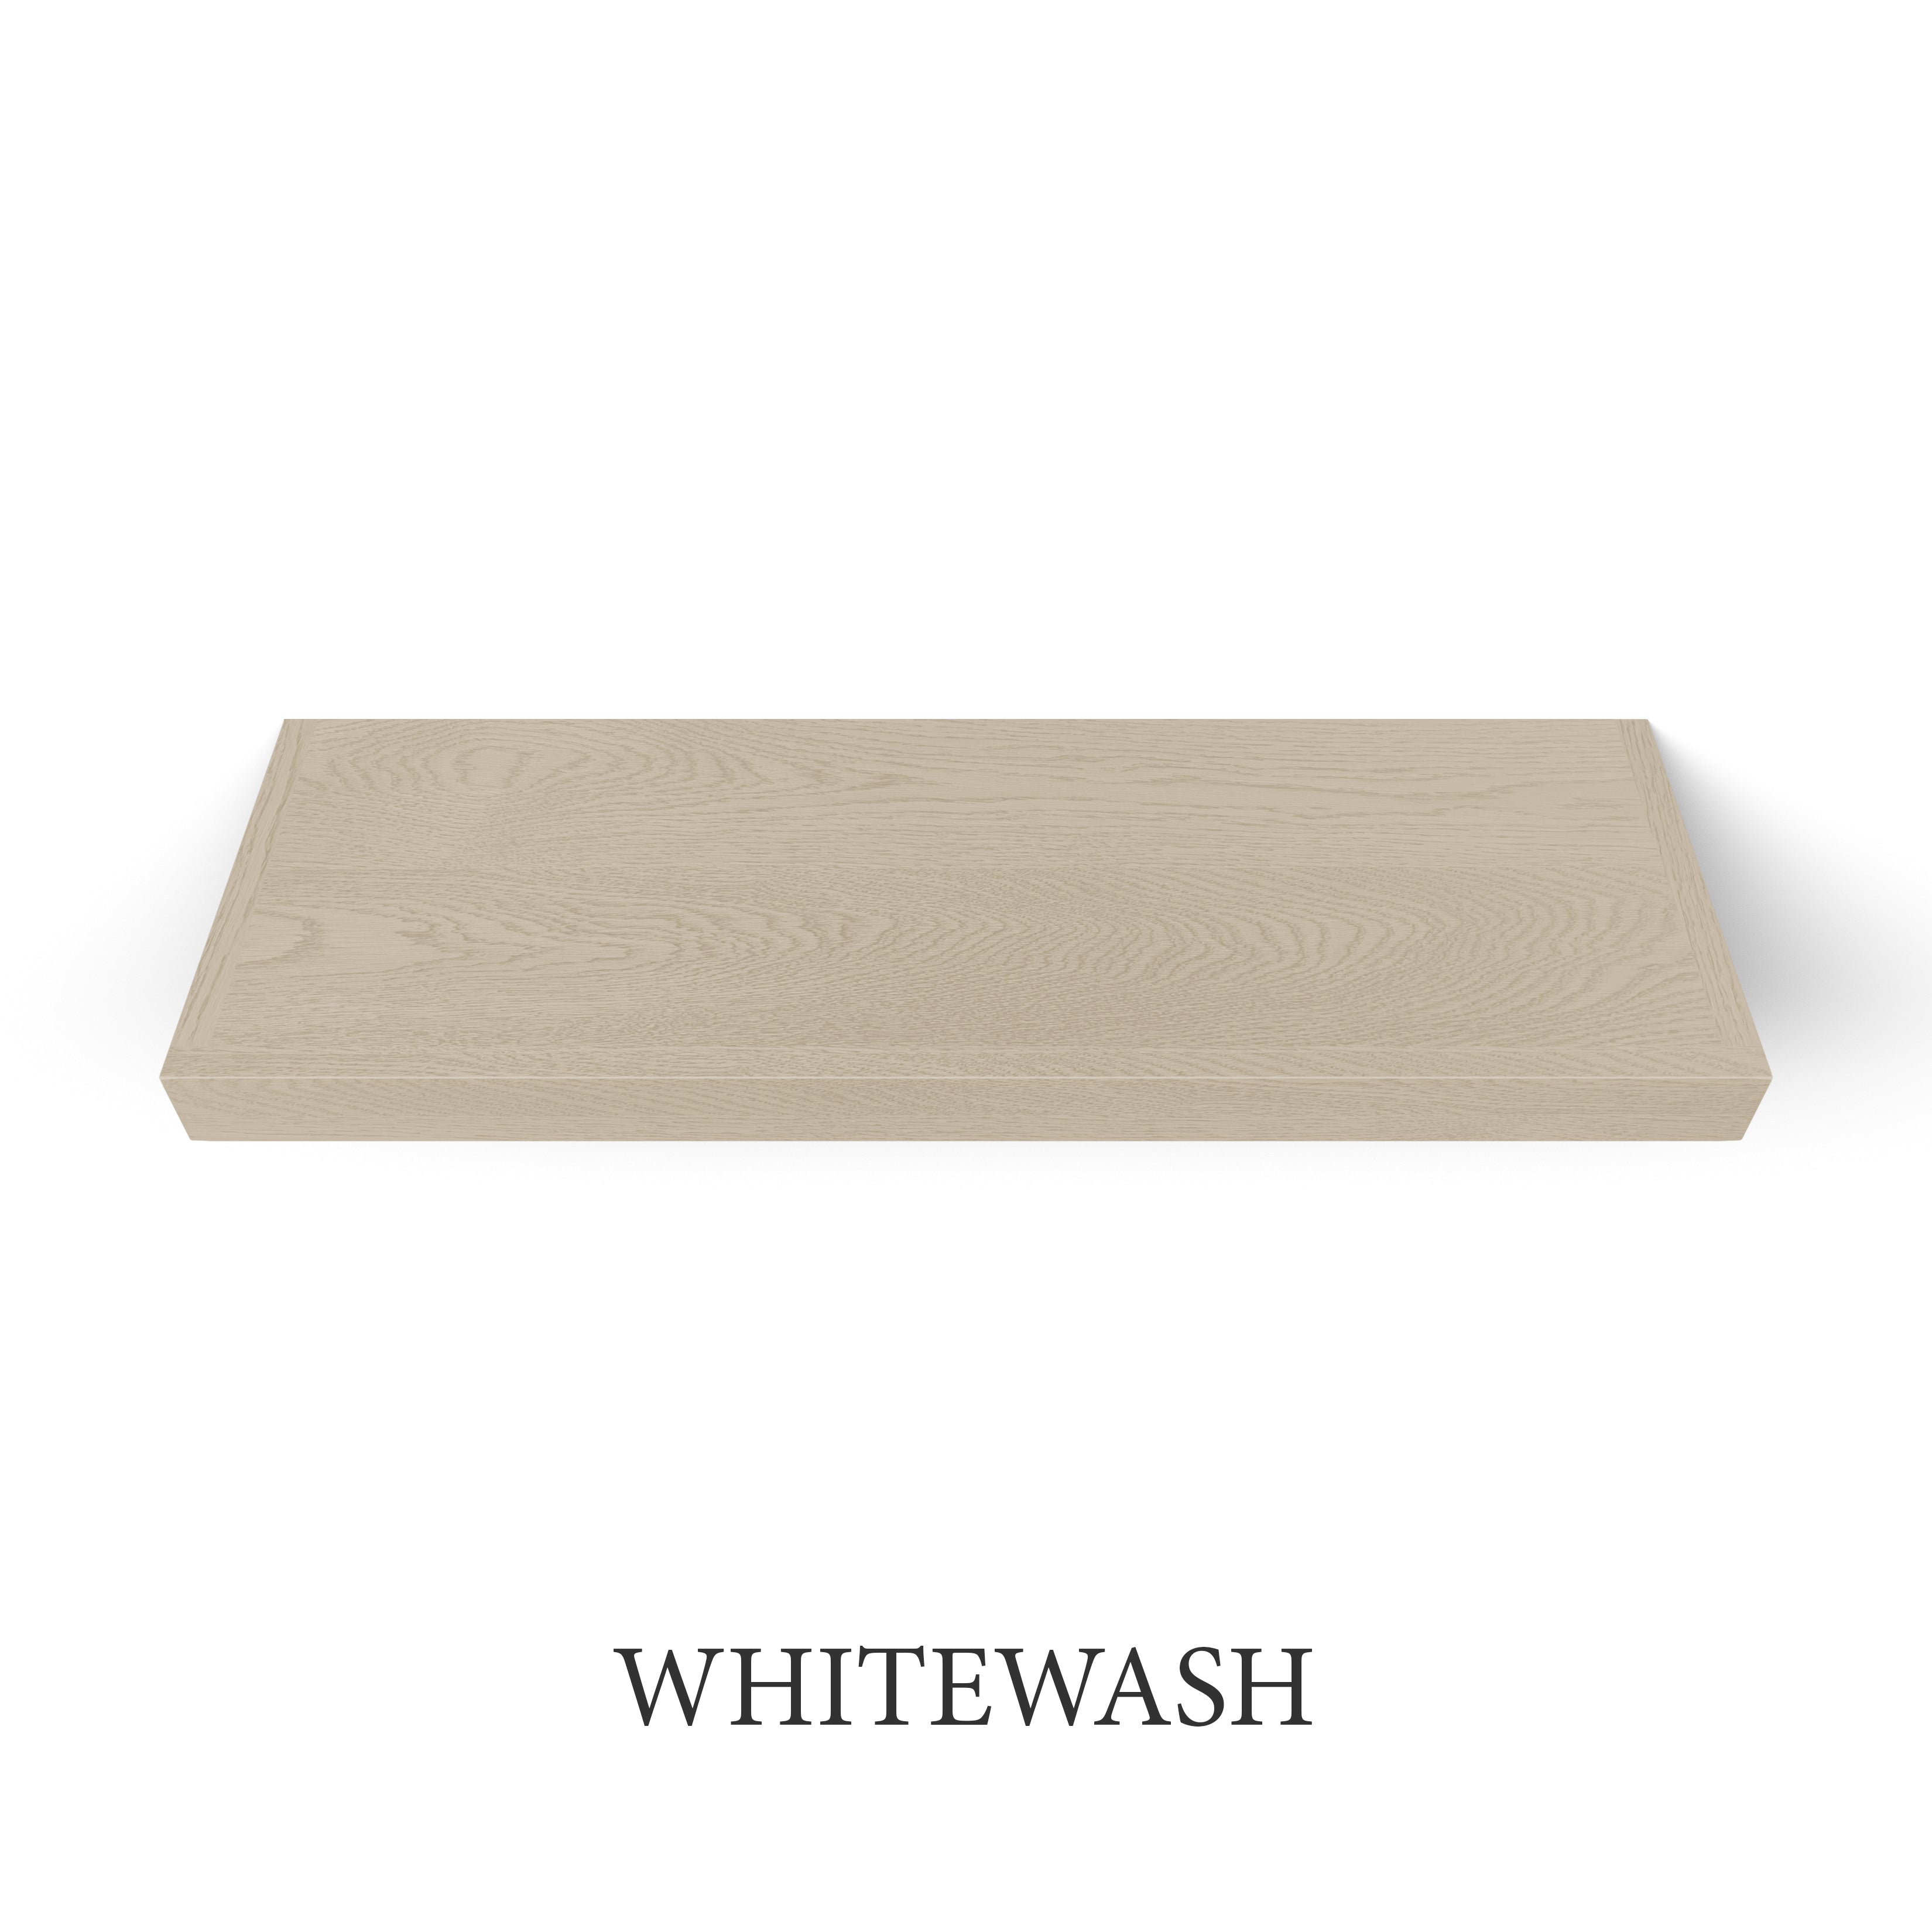 whitewash White Oak 2 Inch Thick LED Lighted Floating Shelf - Battery